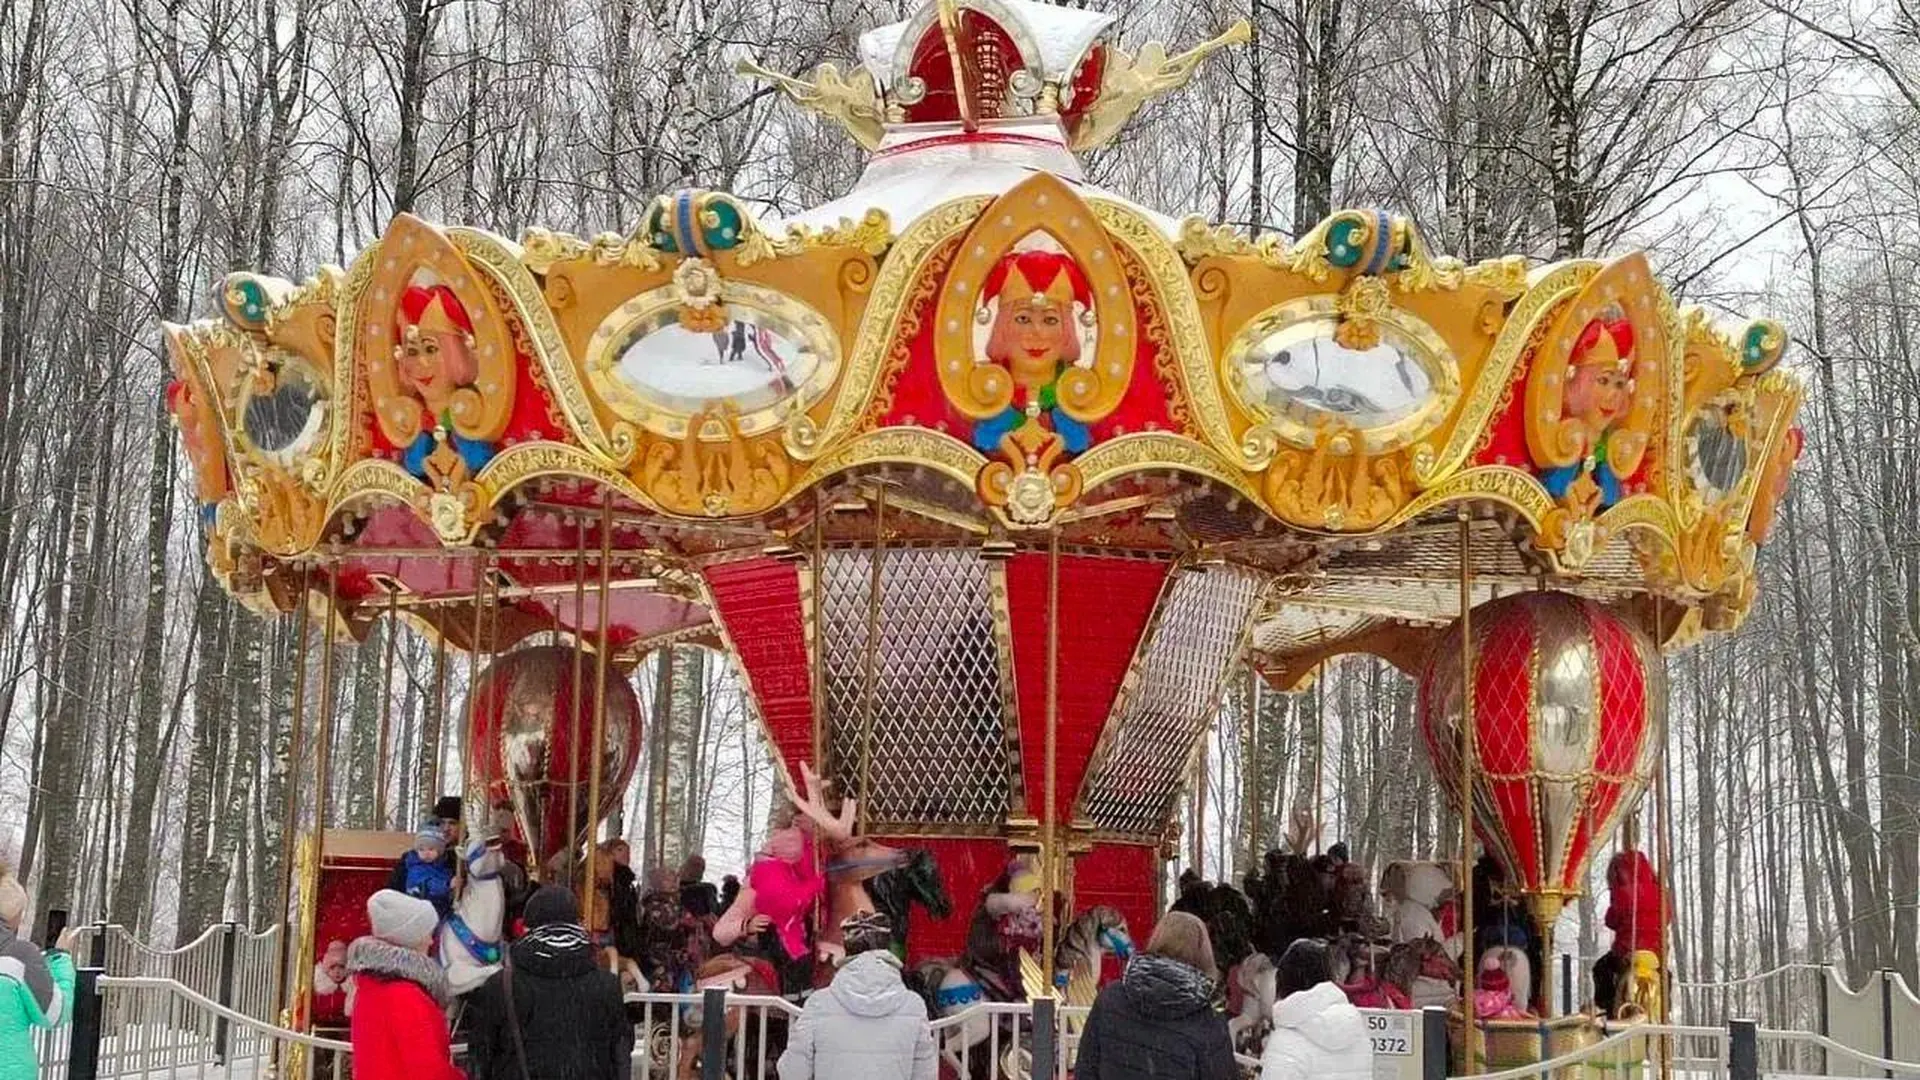 Более 600 человек посетили карусель в парке «Скитские пруды» Сергиева Посада за неделю